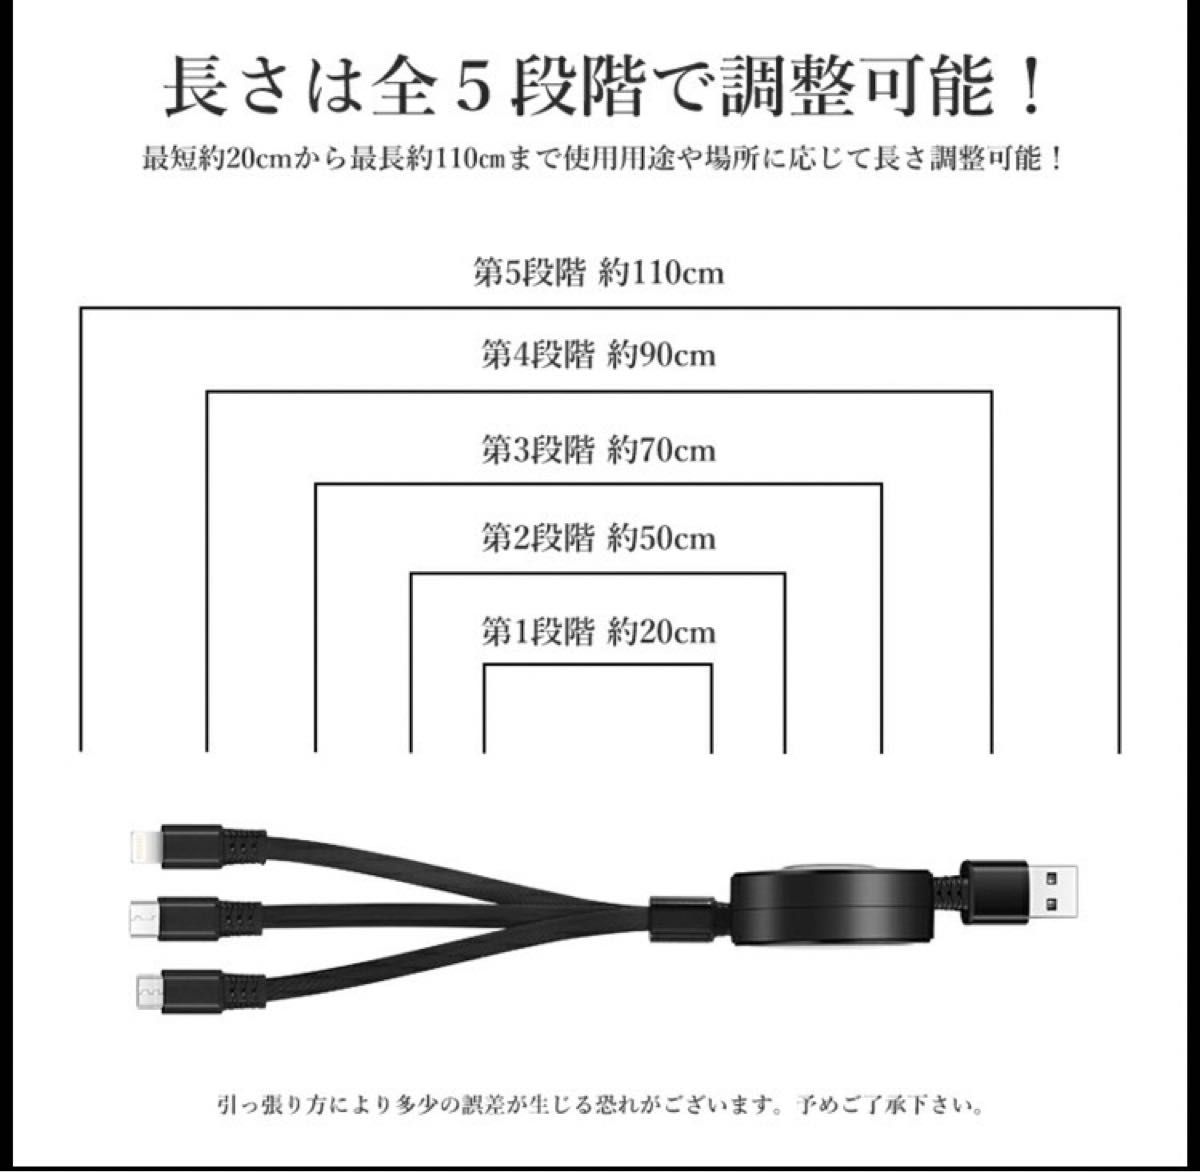 充電 ケーブル 3in1 巻き取り 急速 持ち運び USBケーブル充電コード3役